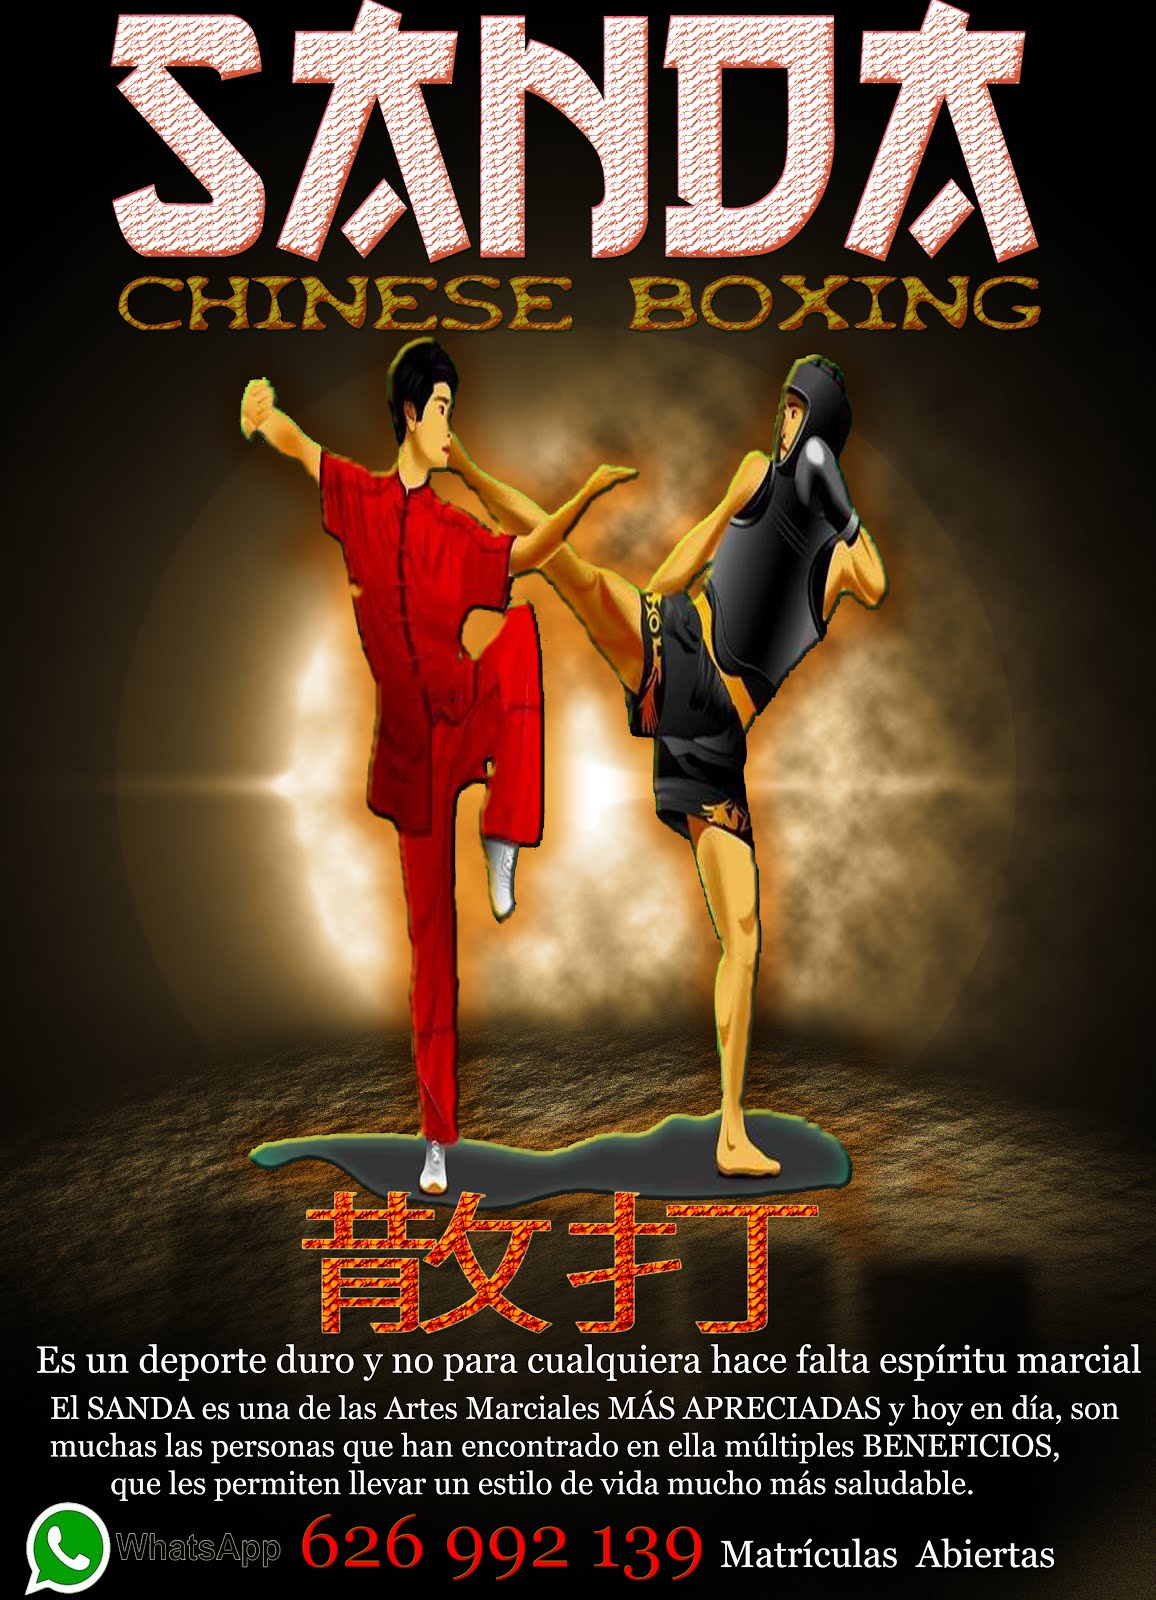 Kung-Fu Madrid Shaolin - Cursos y Clases Niñas y Niños. Infórmate ahora mismo Tlf: 626992139